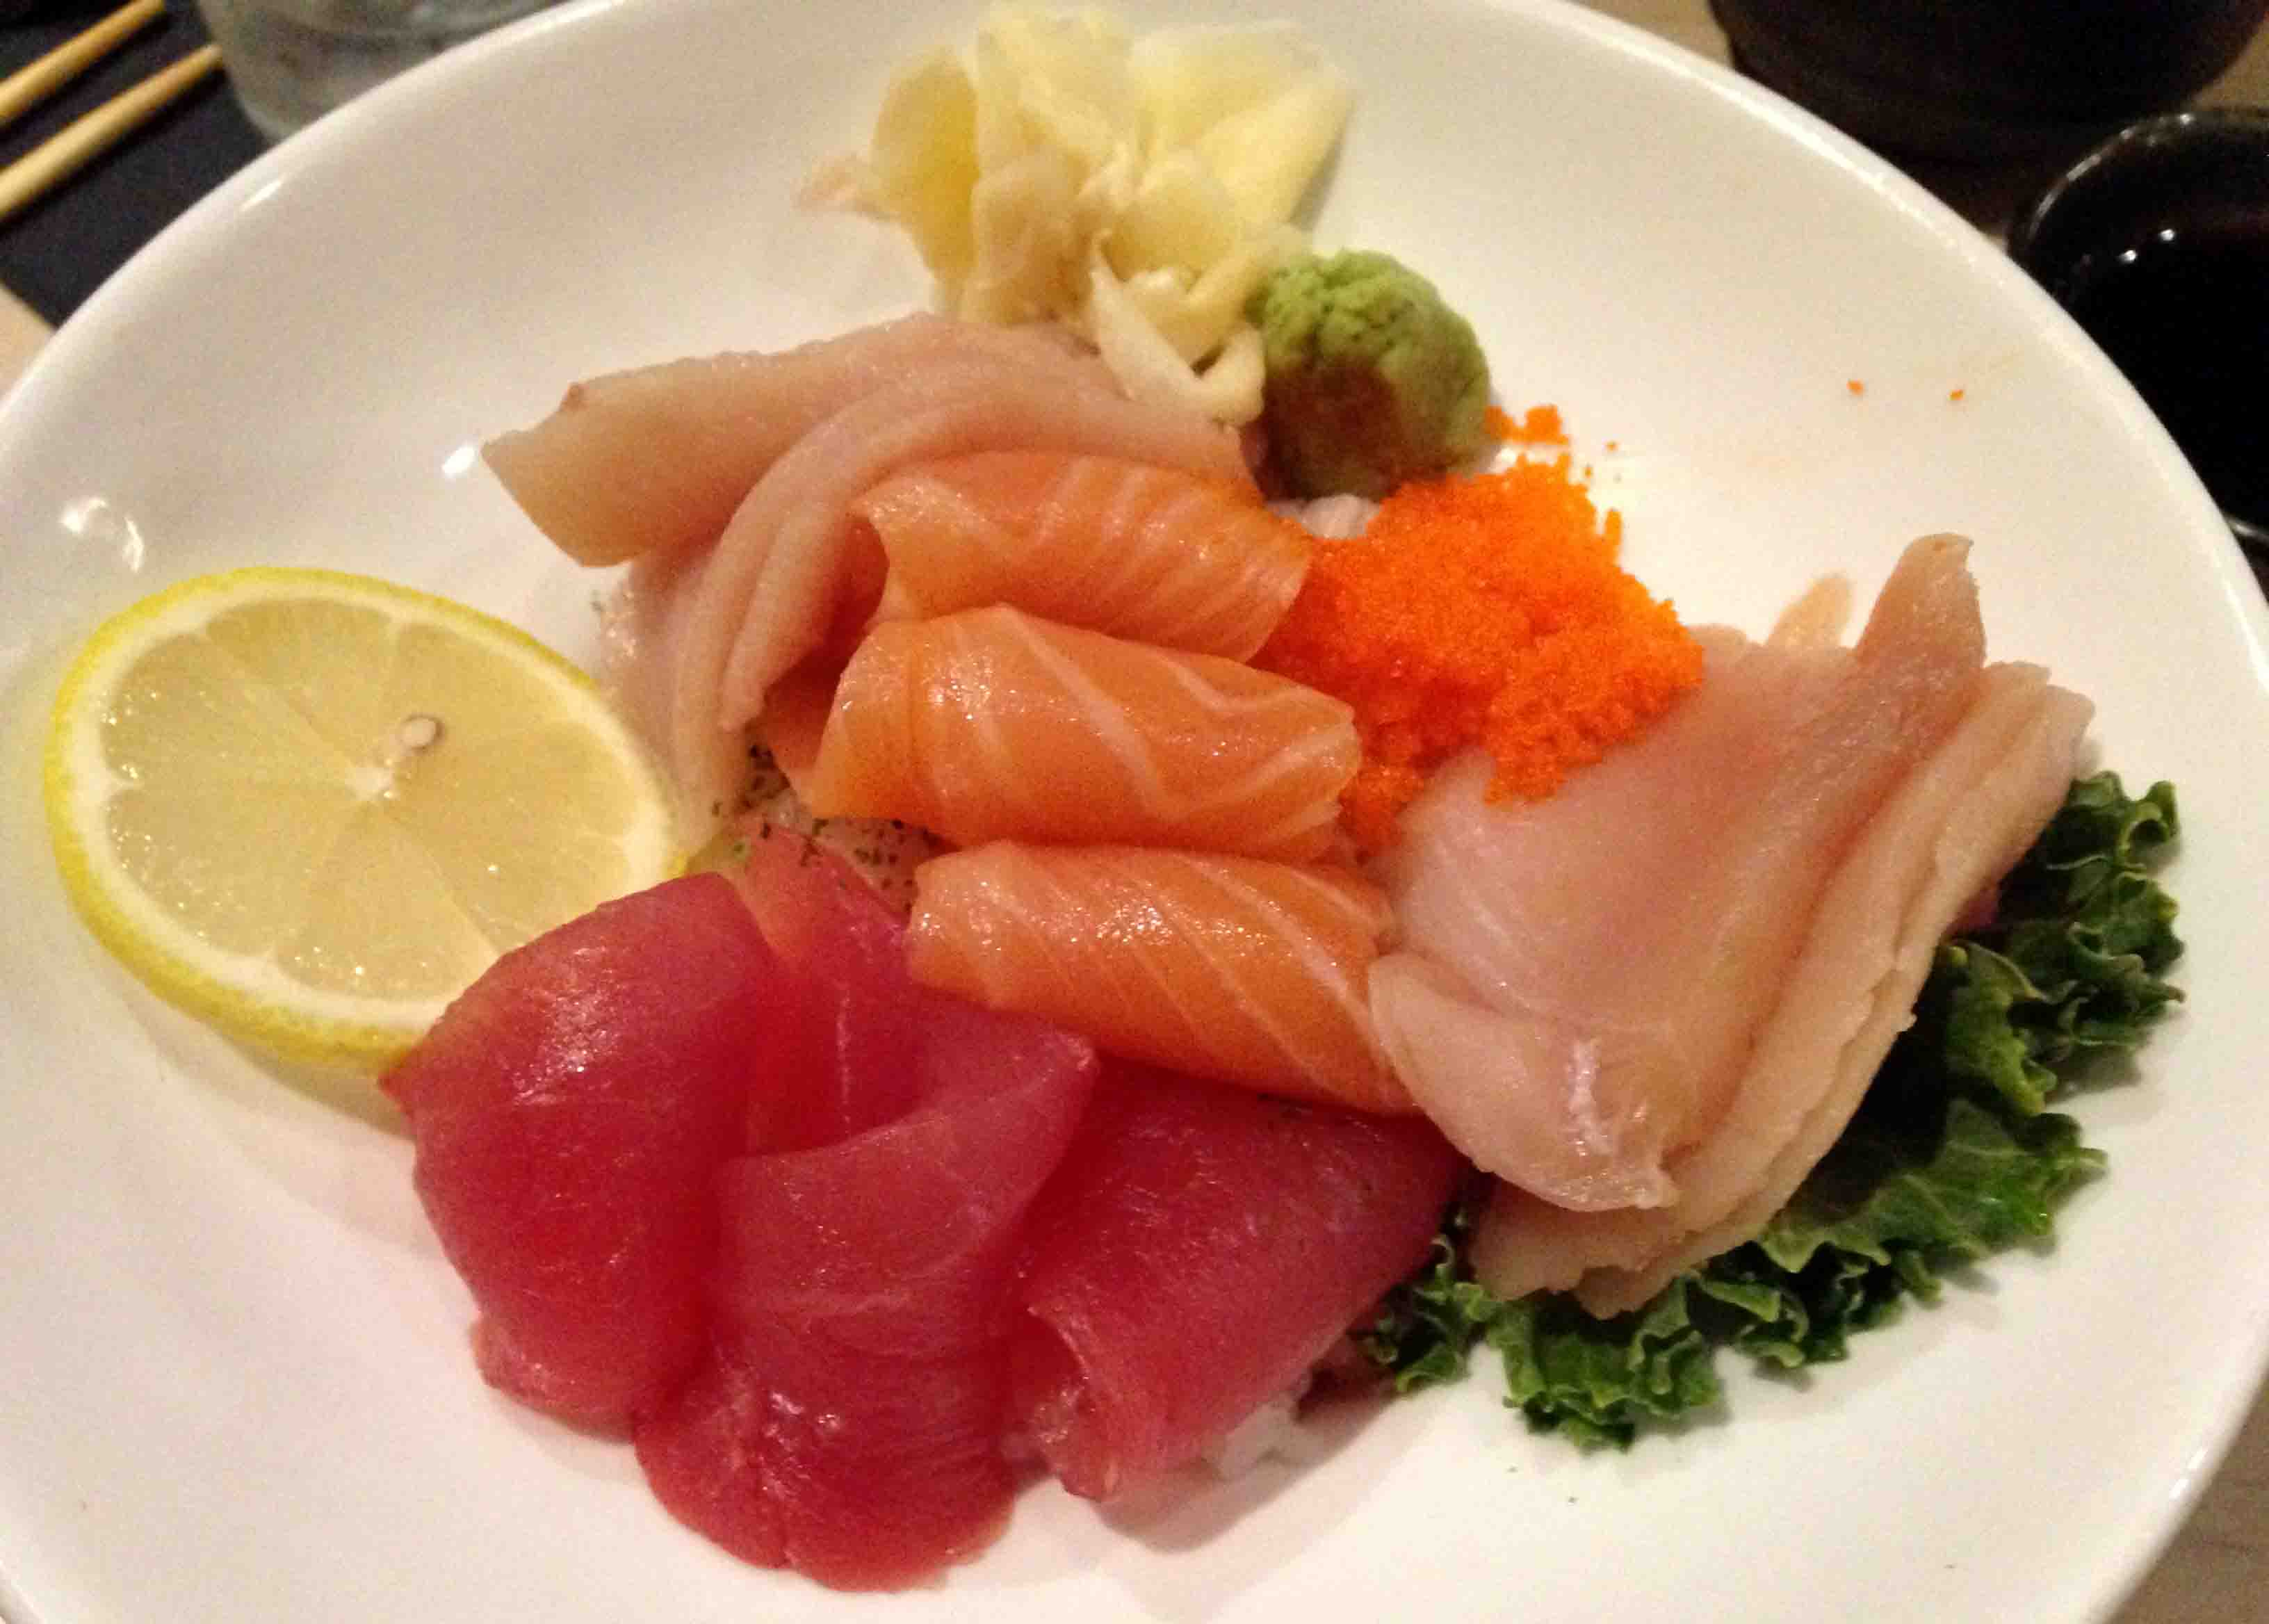 Loving some sashimi at Basan!